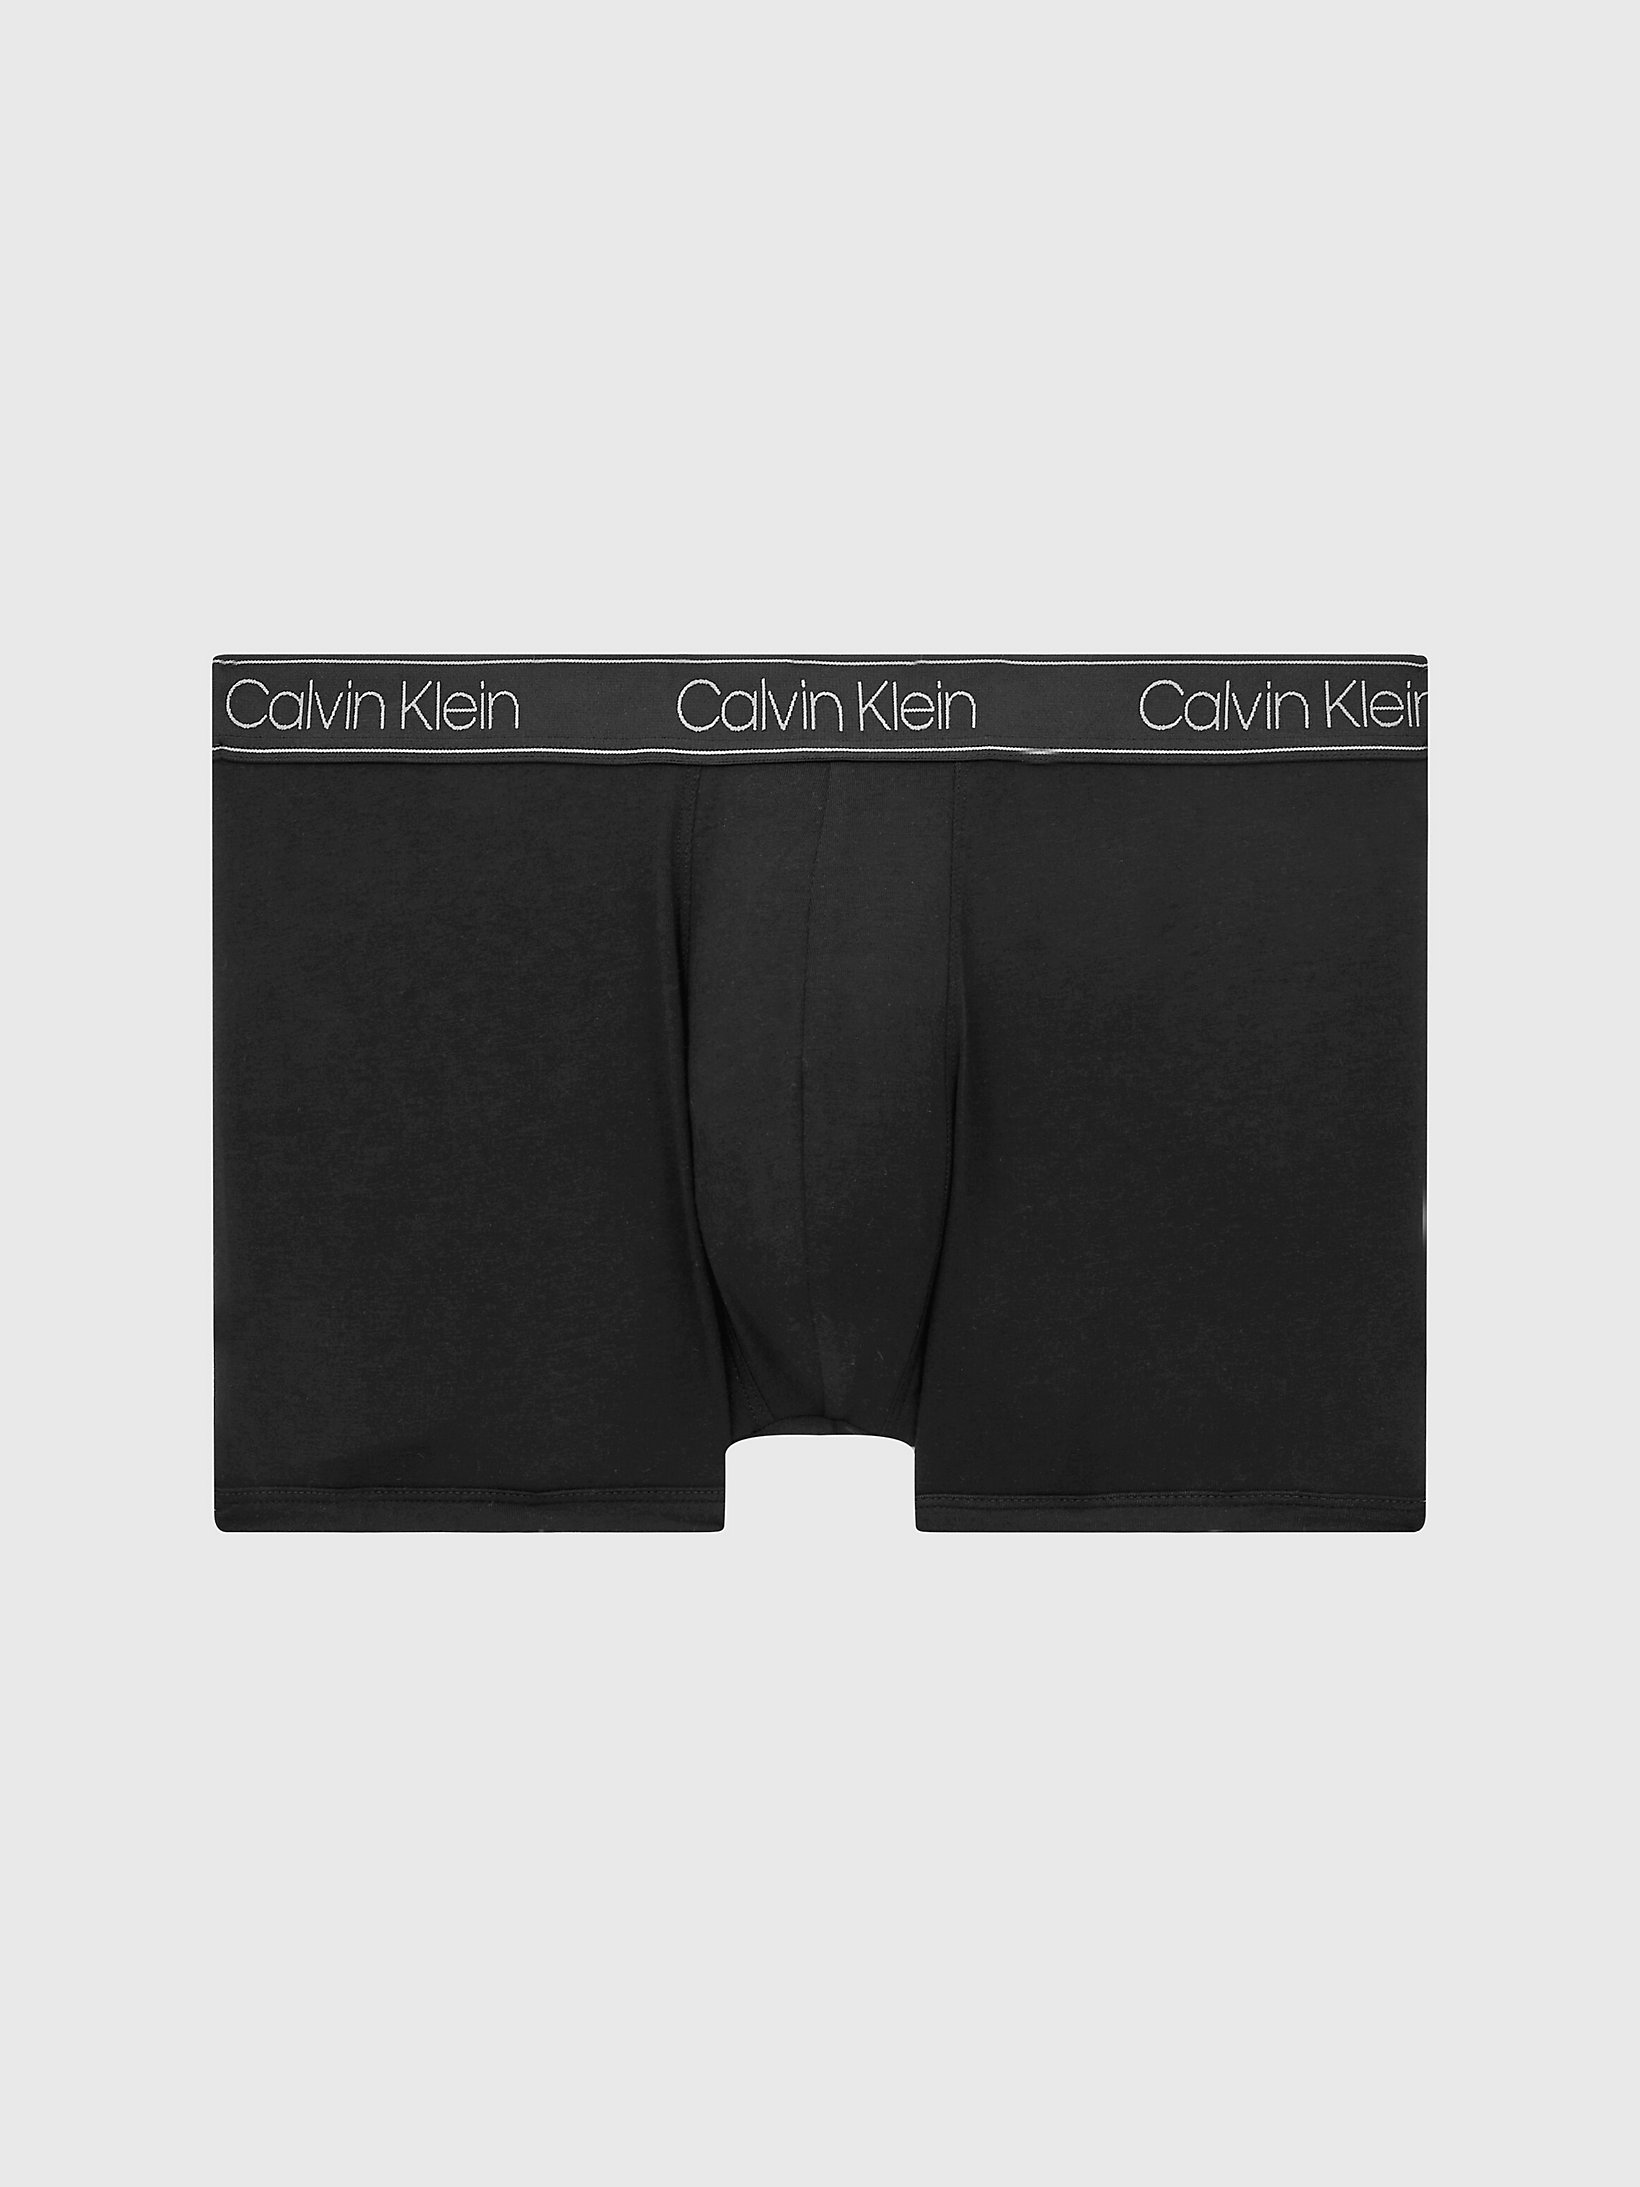 Bóxer - Essential Calvin > Black > undefined mujer > Calvin Klein